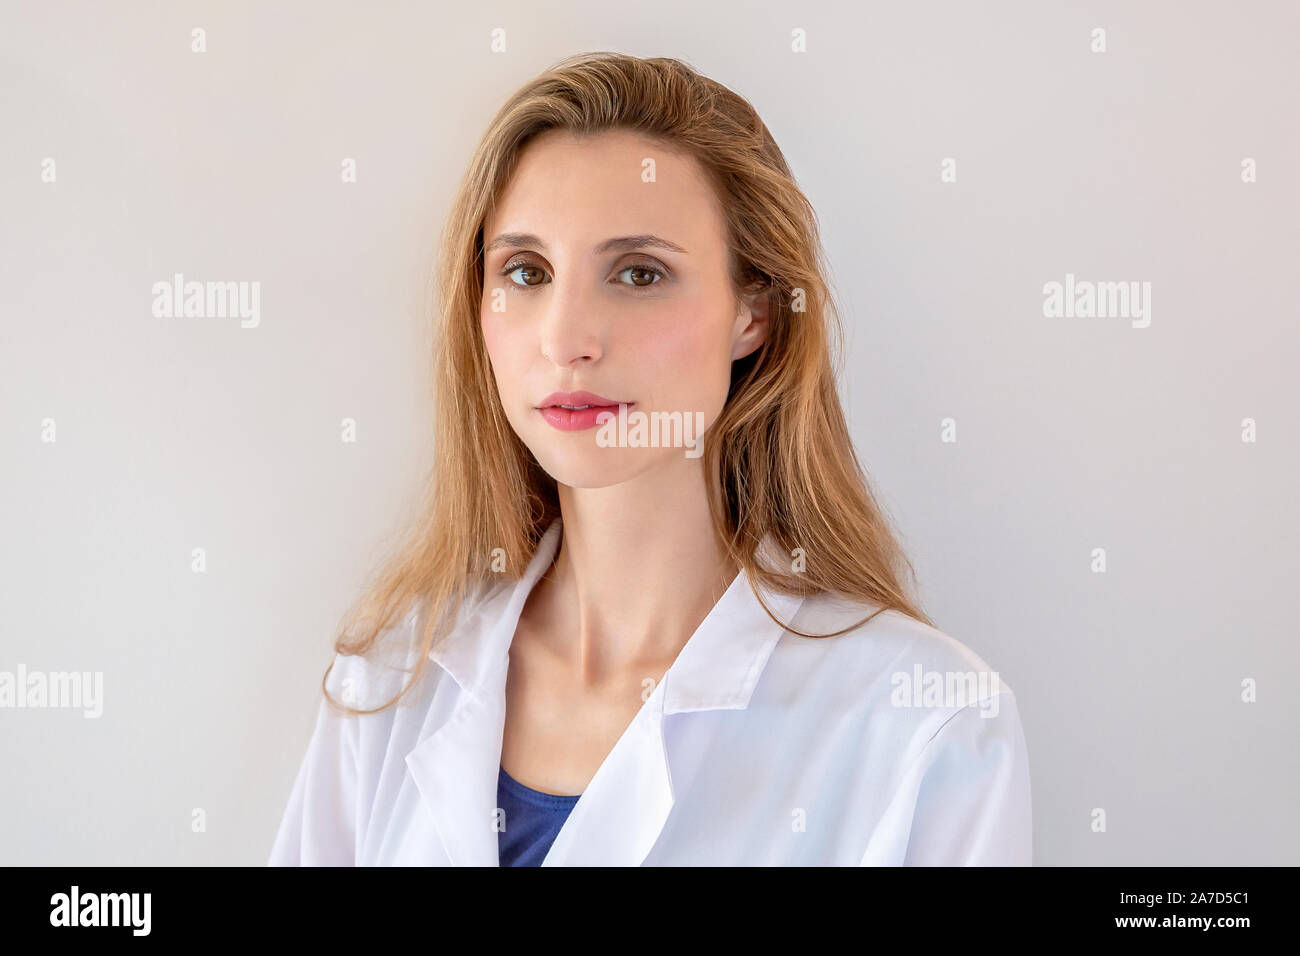 Estudiante de medicina femenina Foto de stock